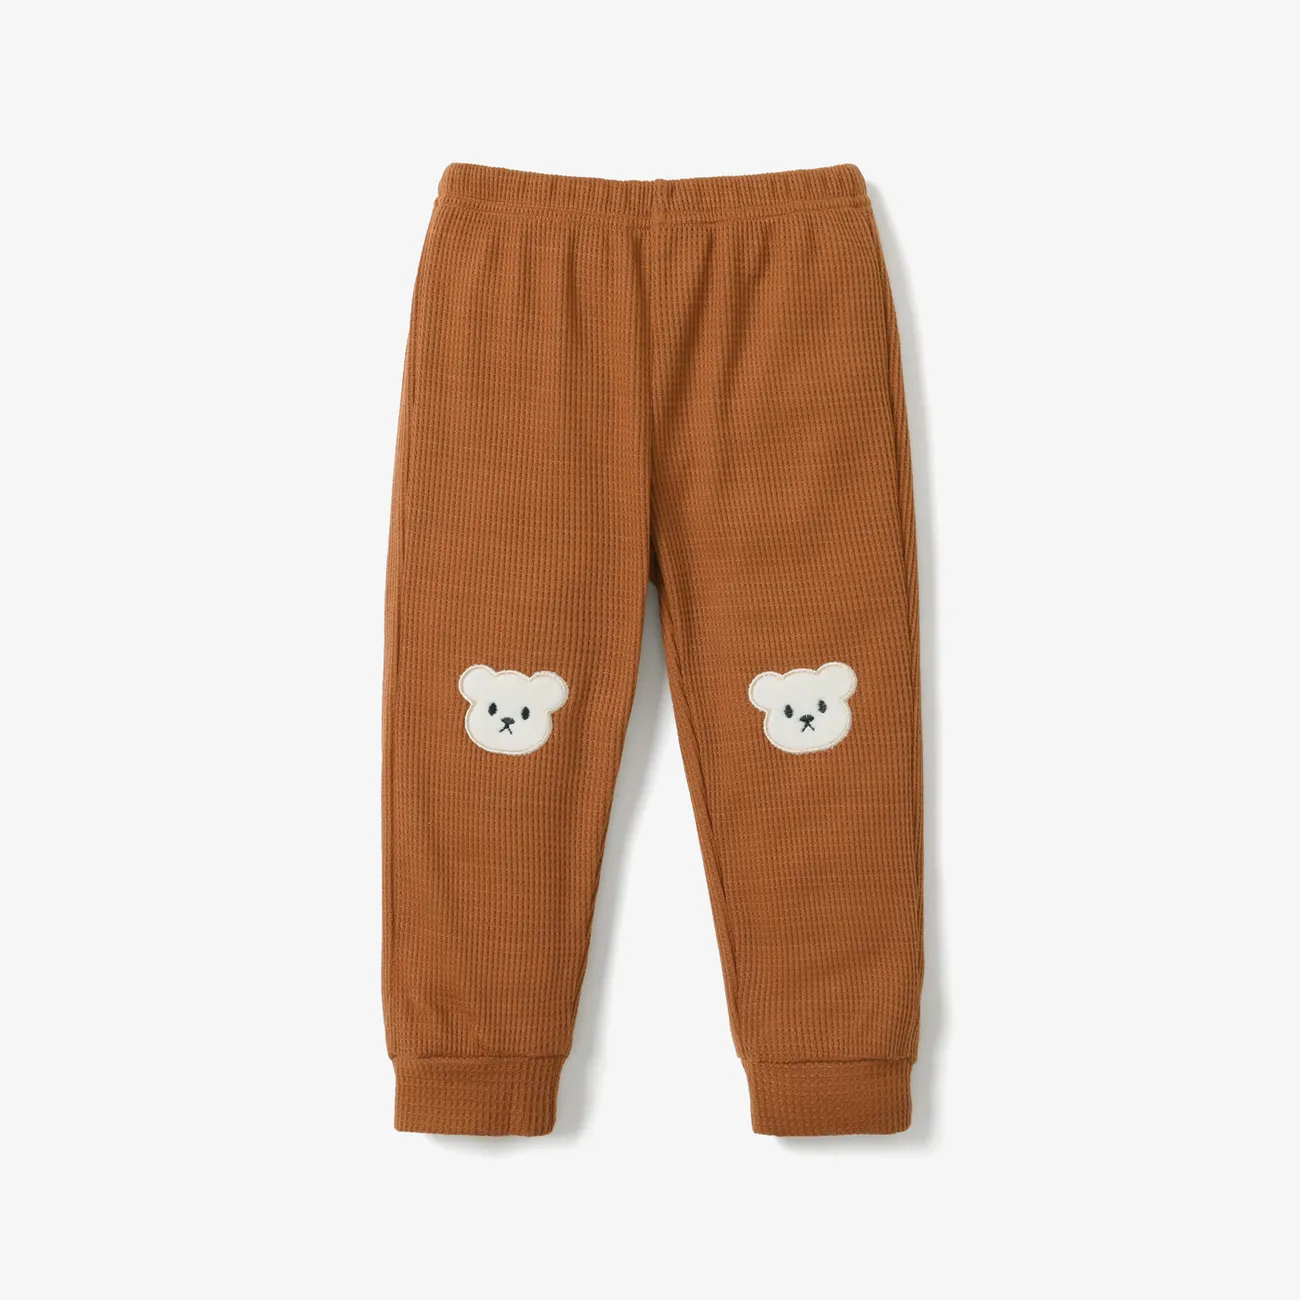 Menina da criança / menino animal urso padrão calças casuais  big image 1